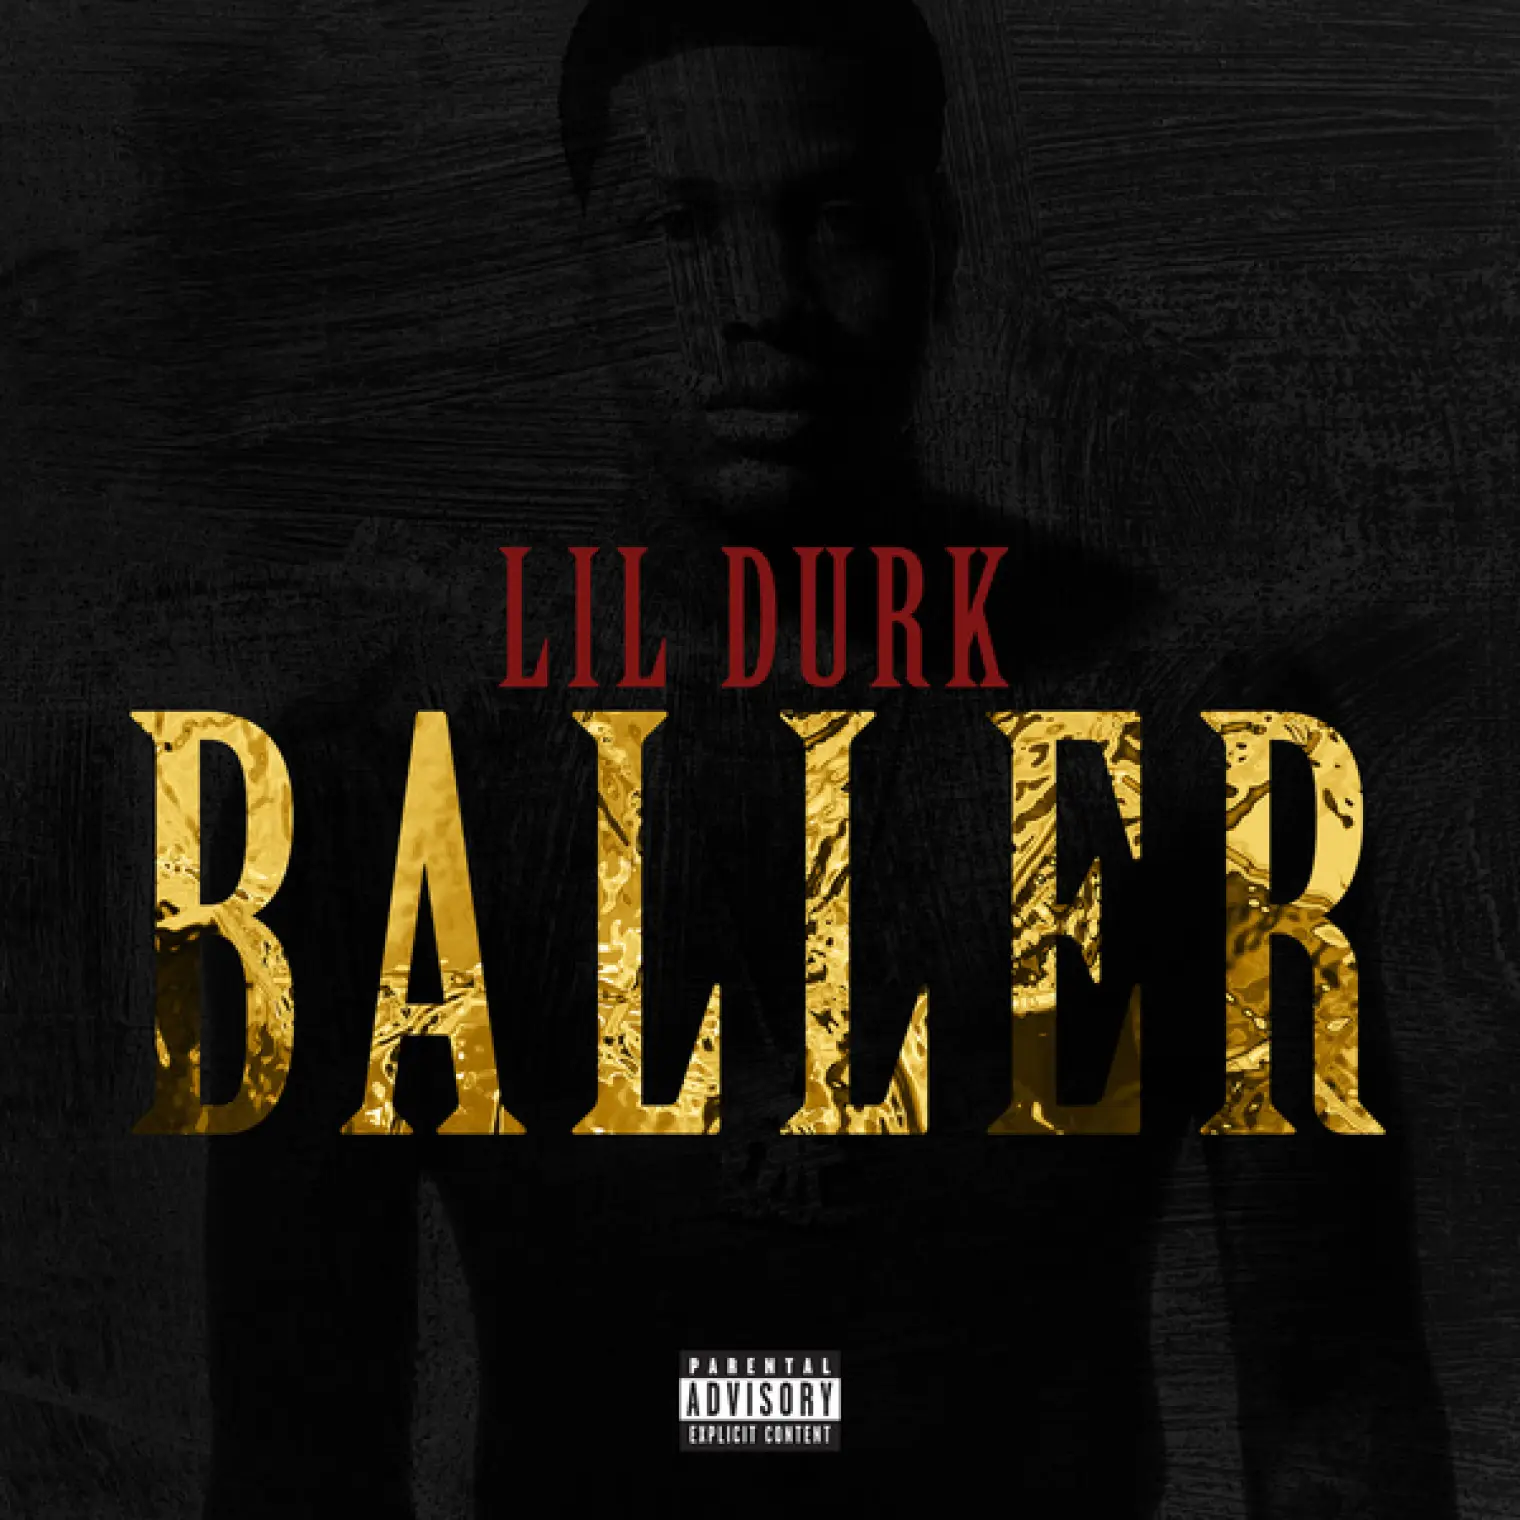 Baller -  Lil Durk 